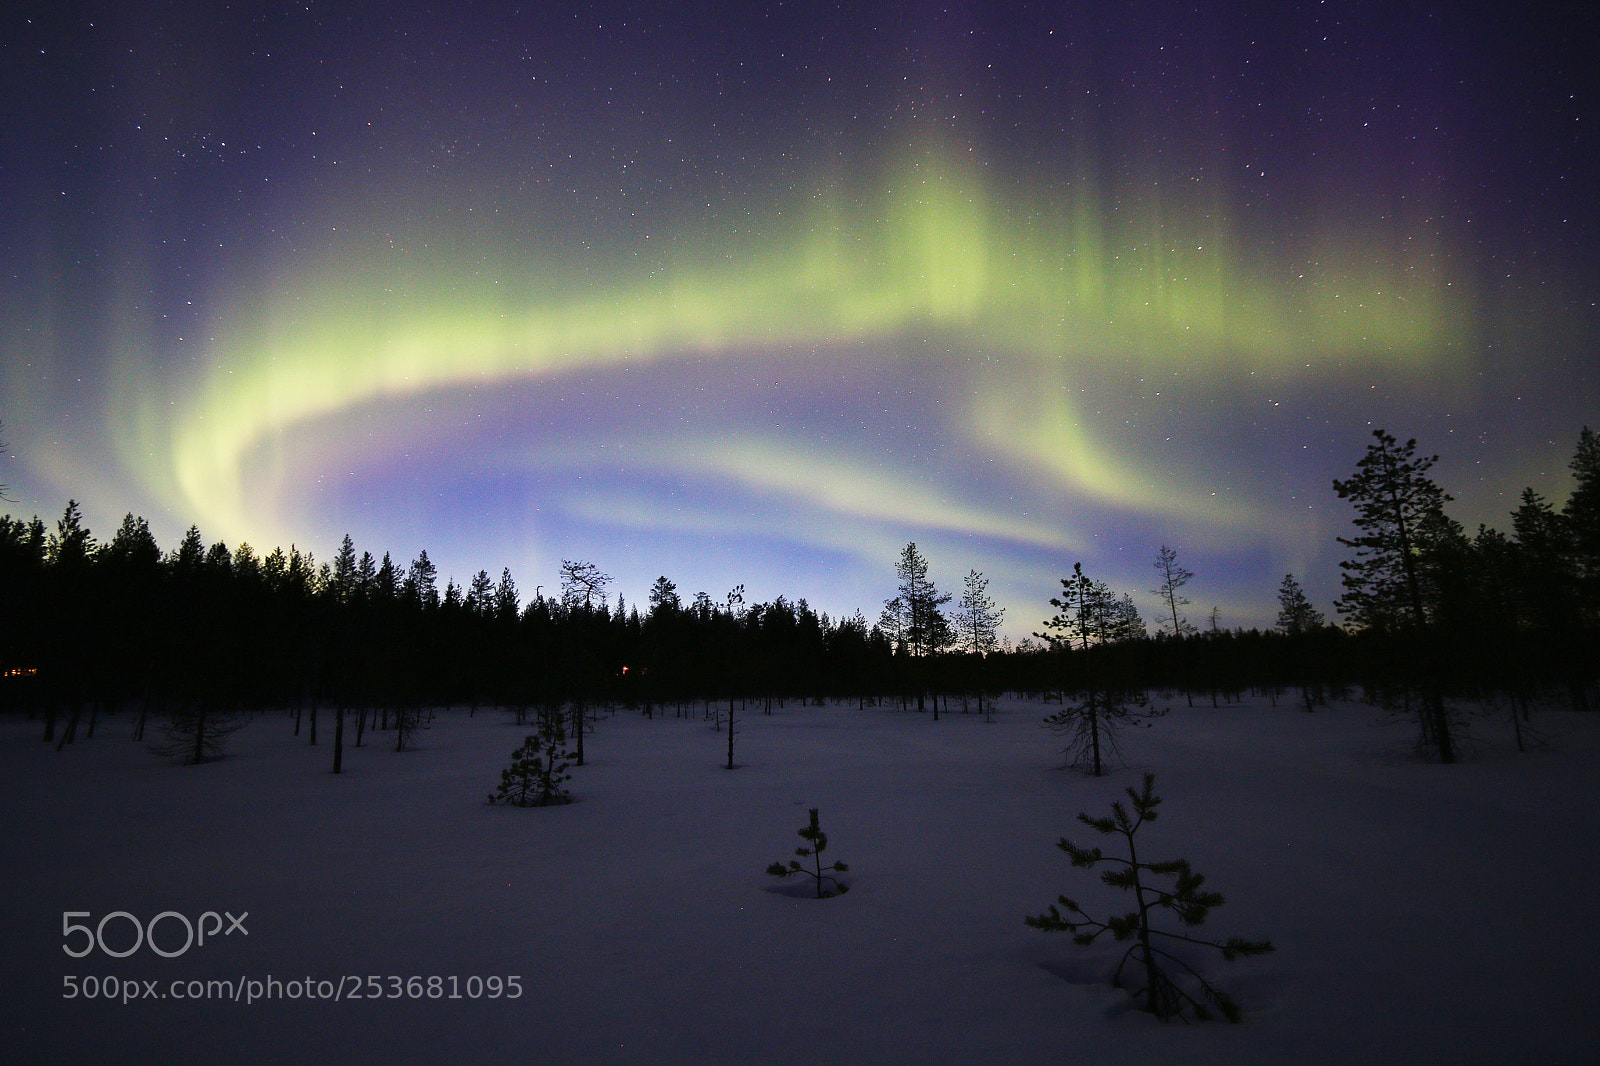 Canon EOS 70D sample photo. Aurora borealis photography